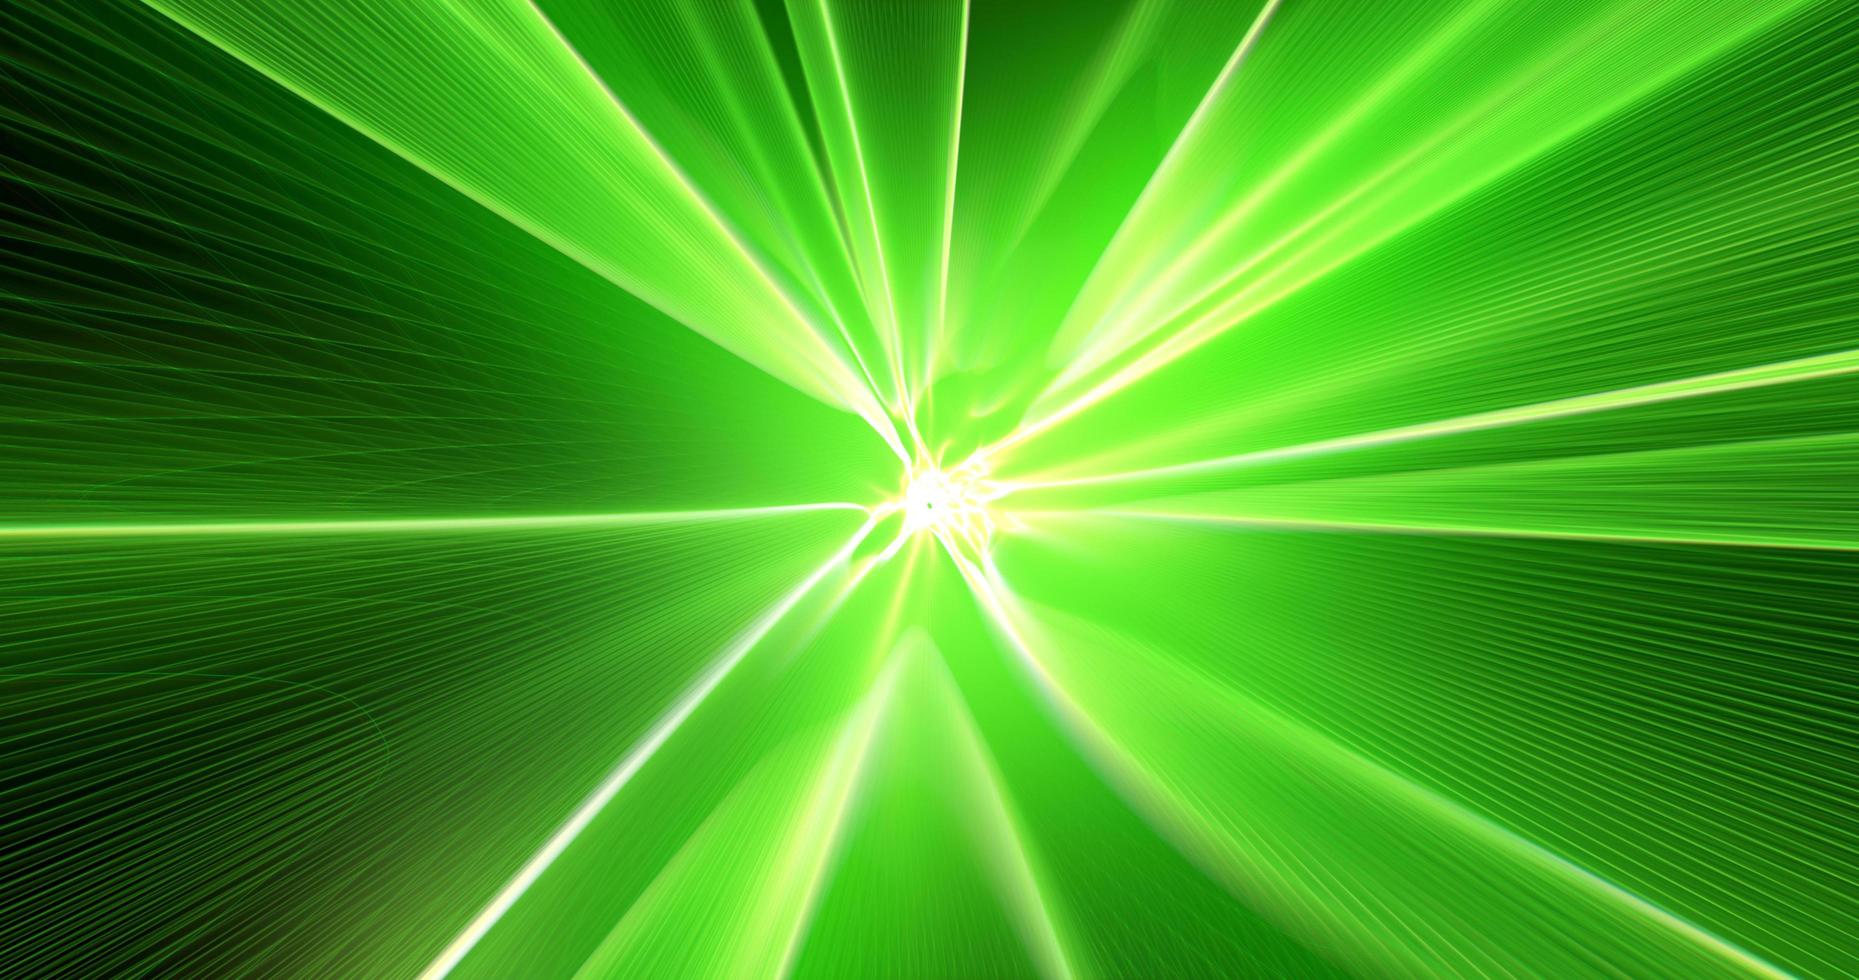 abstract achtergrond met een tunnel van groen energie magisch licht lijnen en strepen met golven. screensaver mooi foto